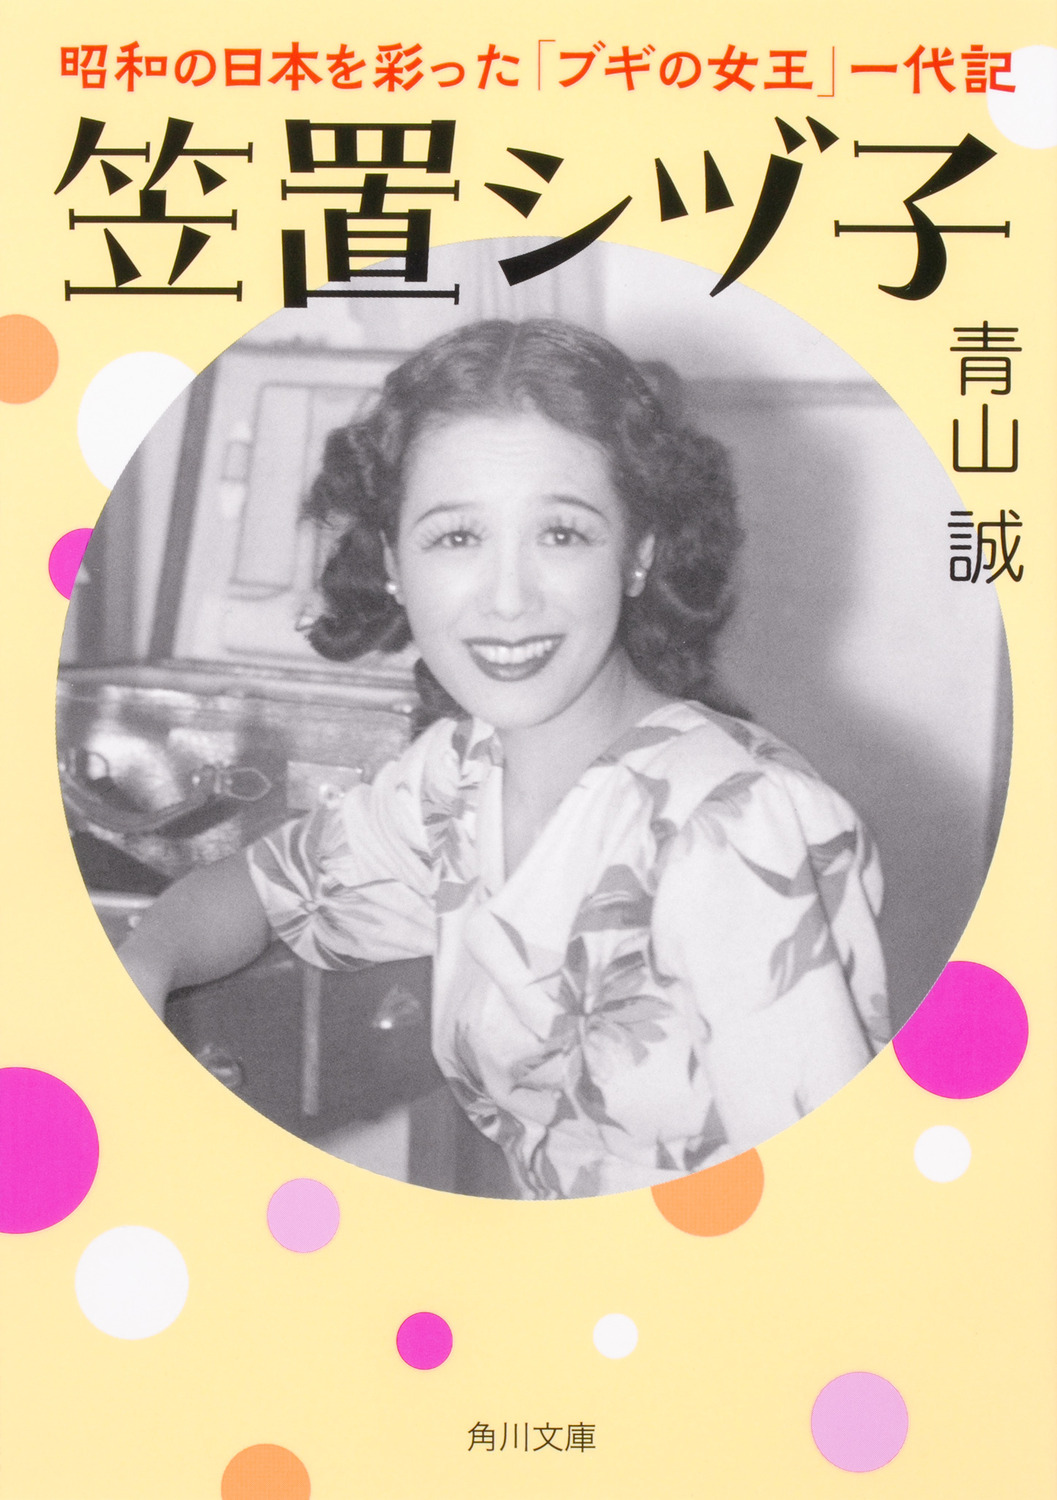 笠置シヅ子 昭和の日本を彩った「ブギの女王」一代記の商品画像